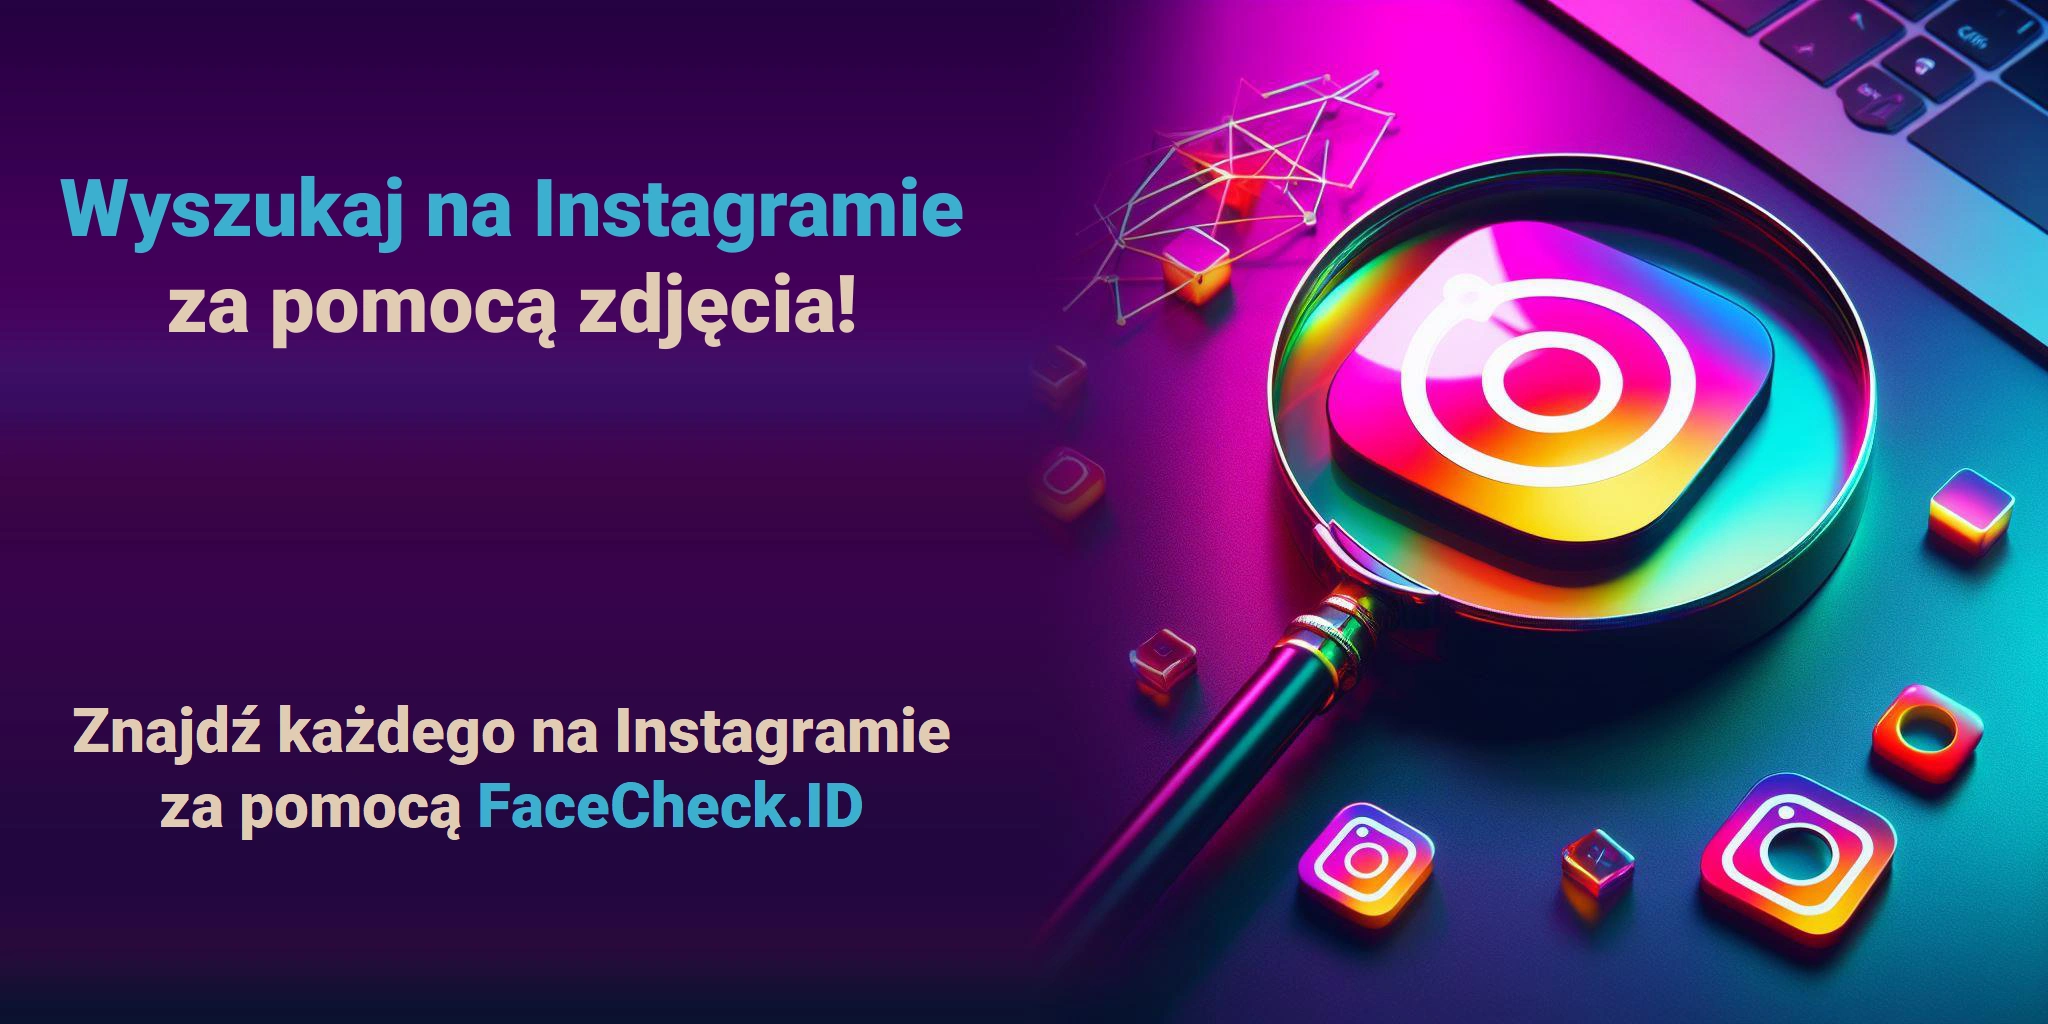 Wyszukaj na Instagramie za pomocą zdjęcia! Znajdź każdego na Instagramie za pomocą FaceCheck.ID